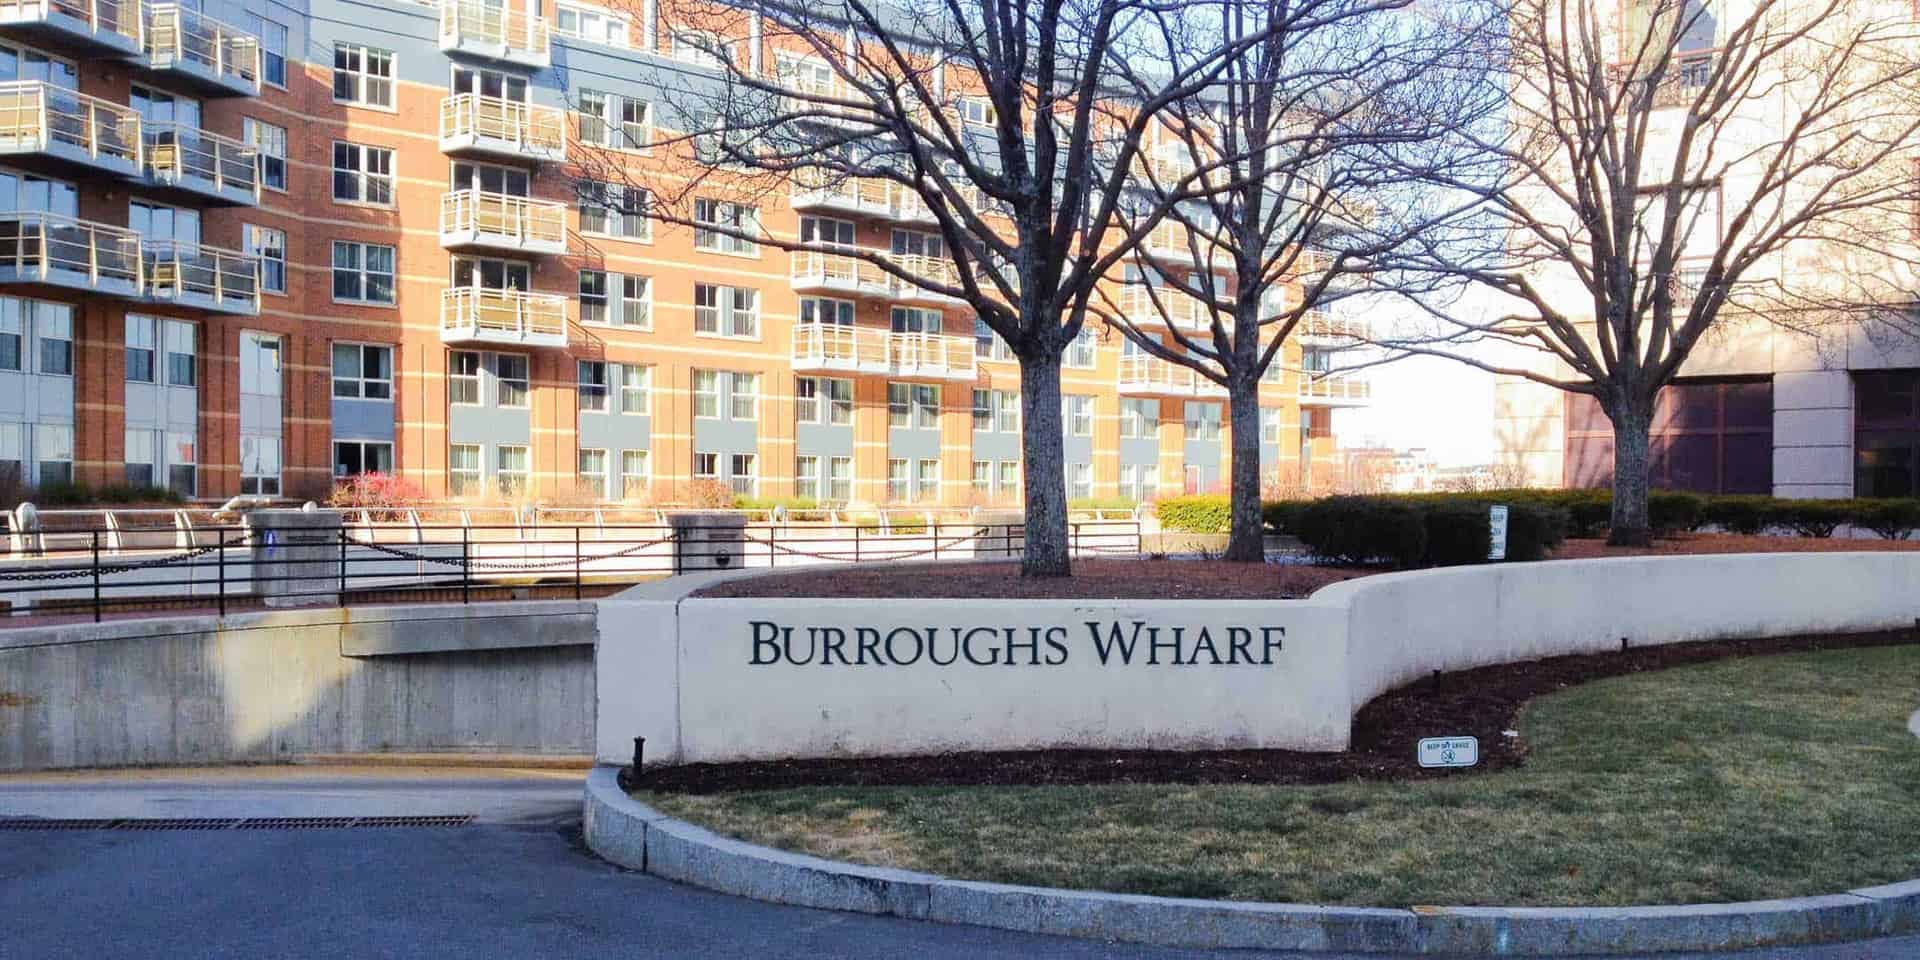 Burroughs Wharf